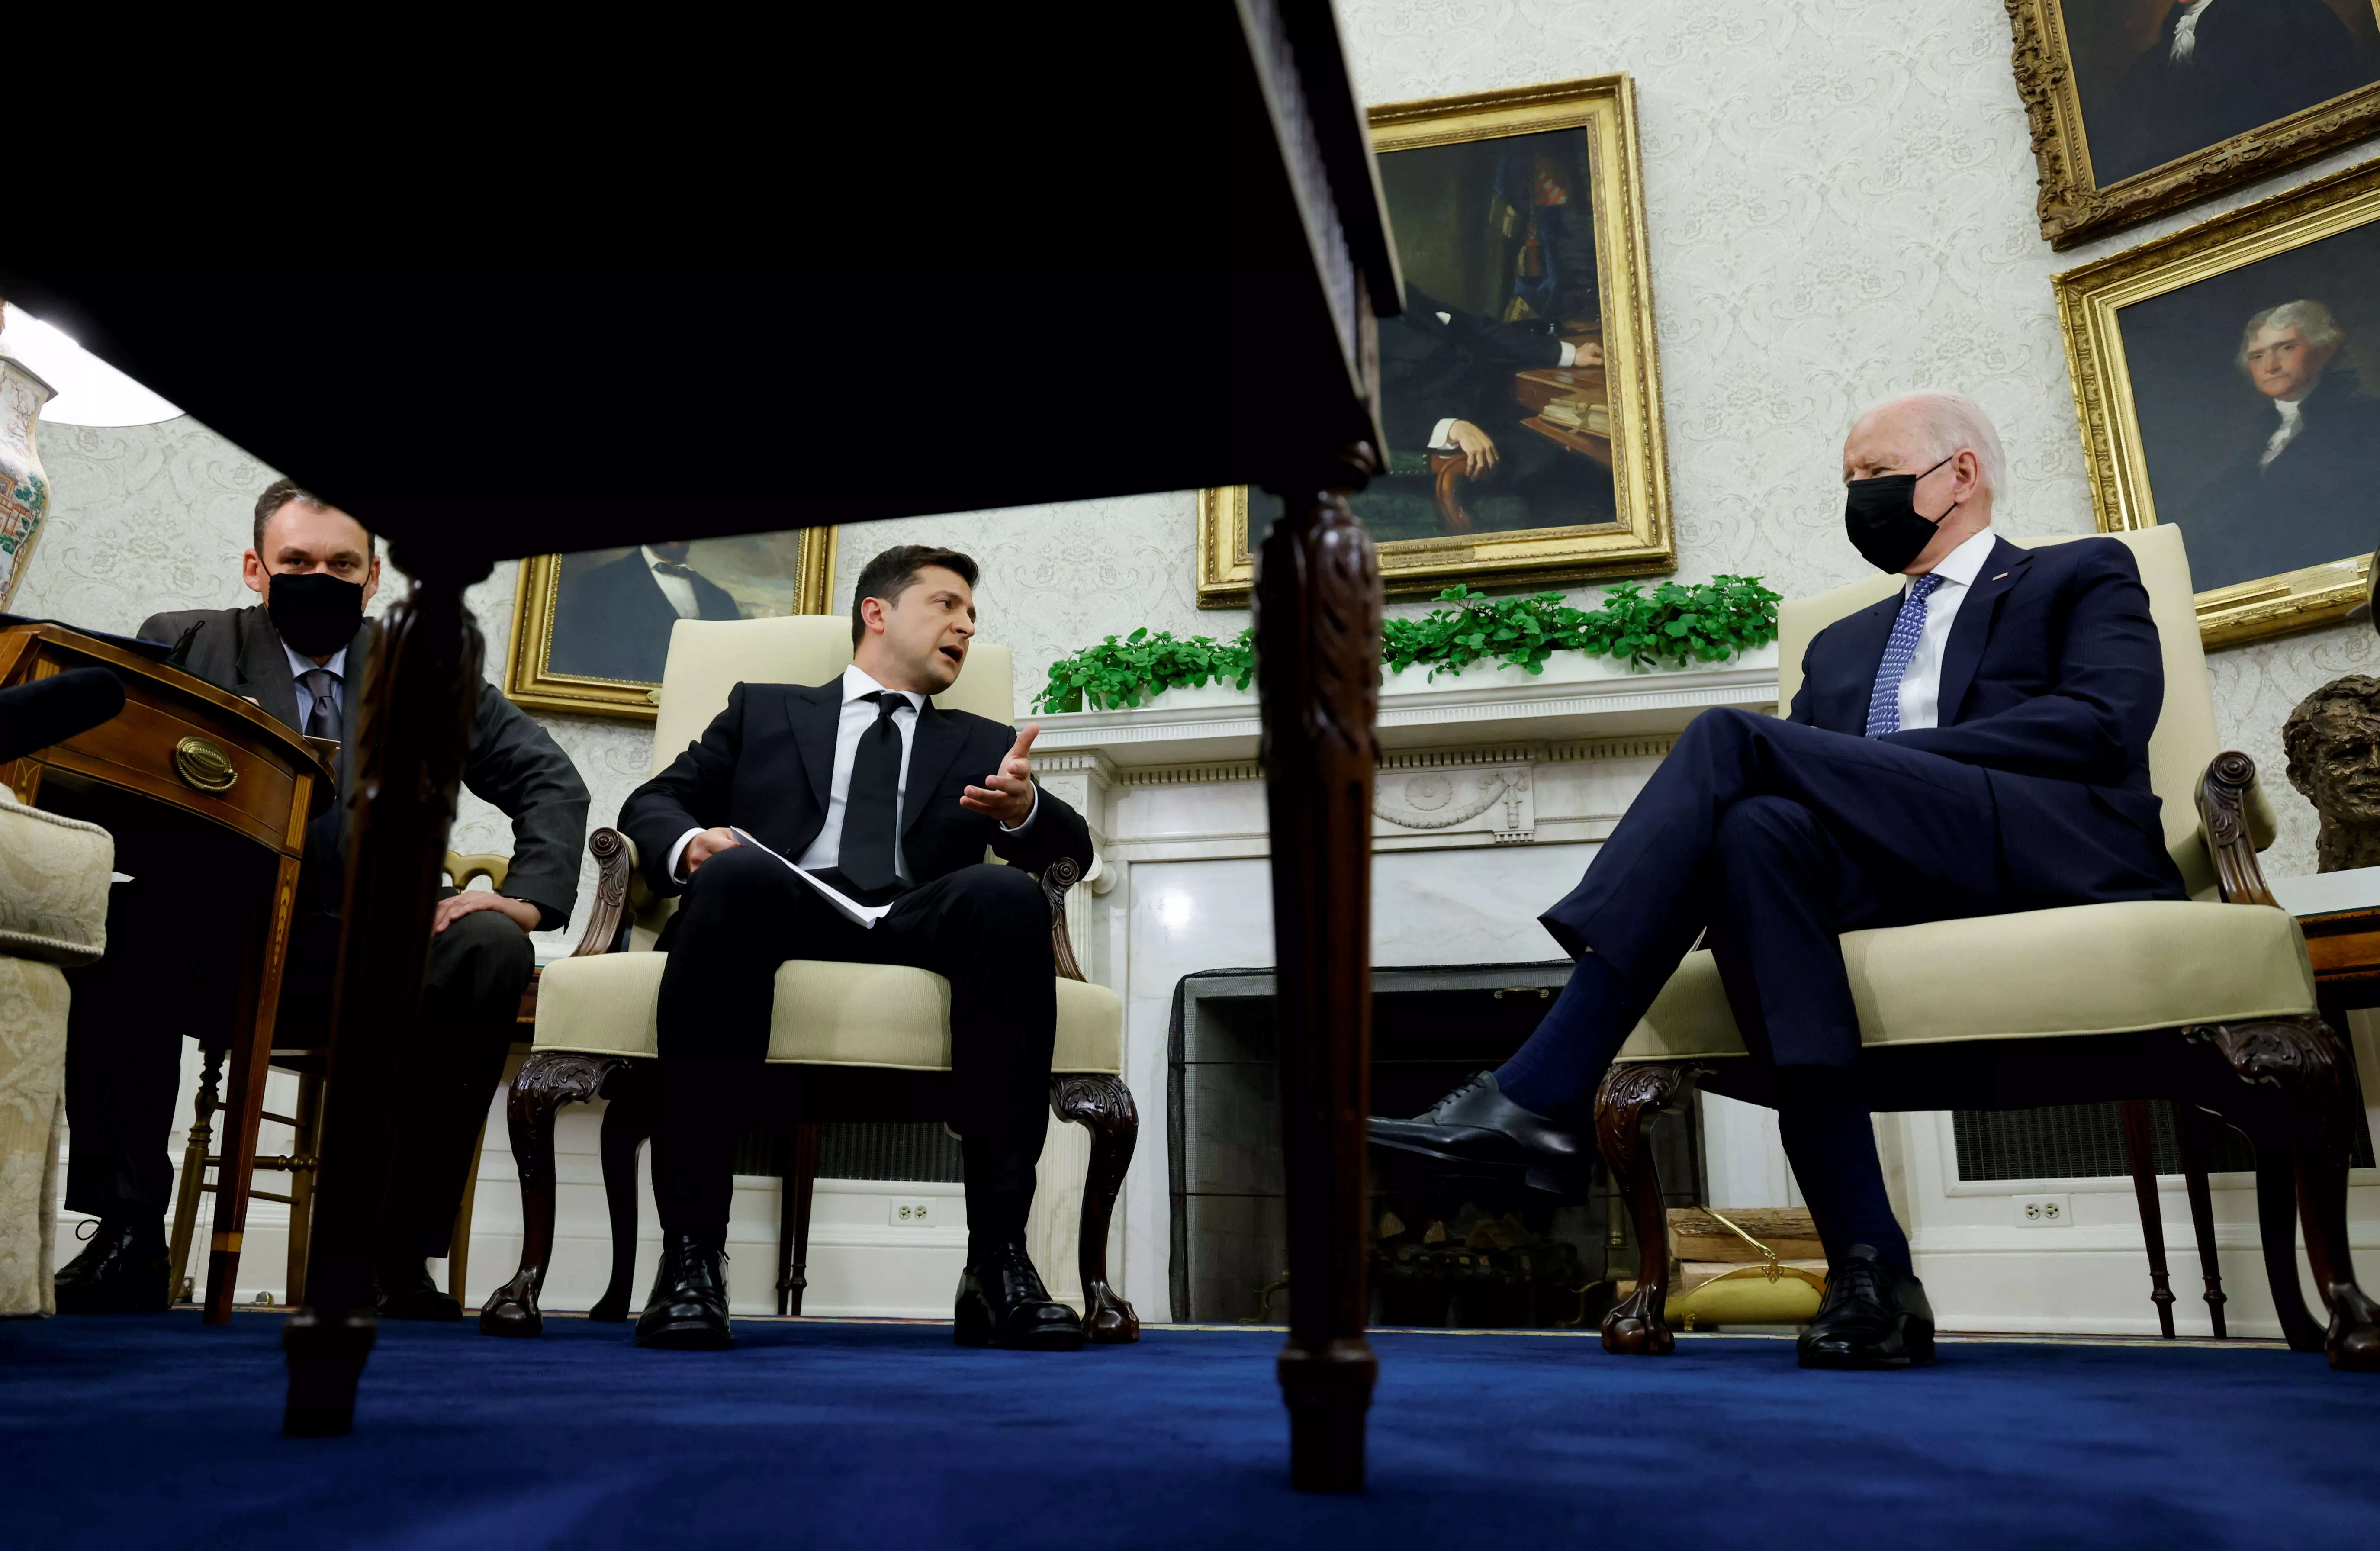 Украинцы очень критично анализируют визит Зеленского в Белый дом / Фото Reuters